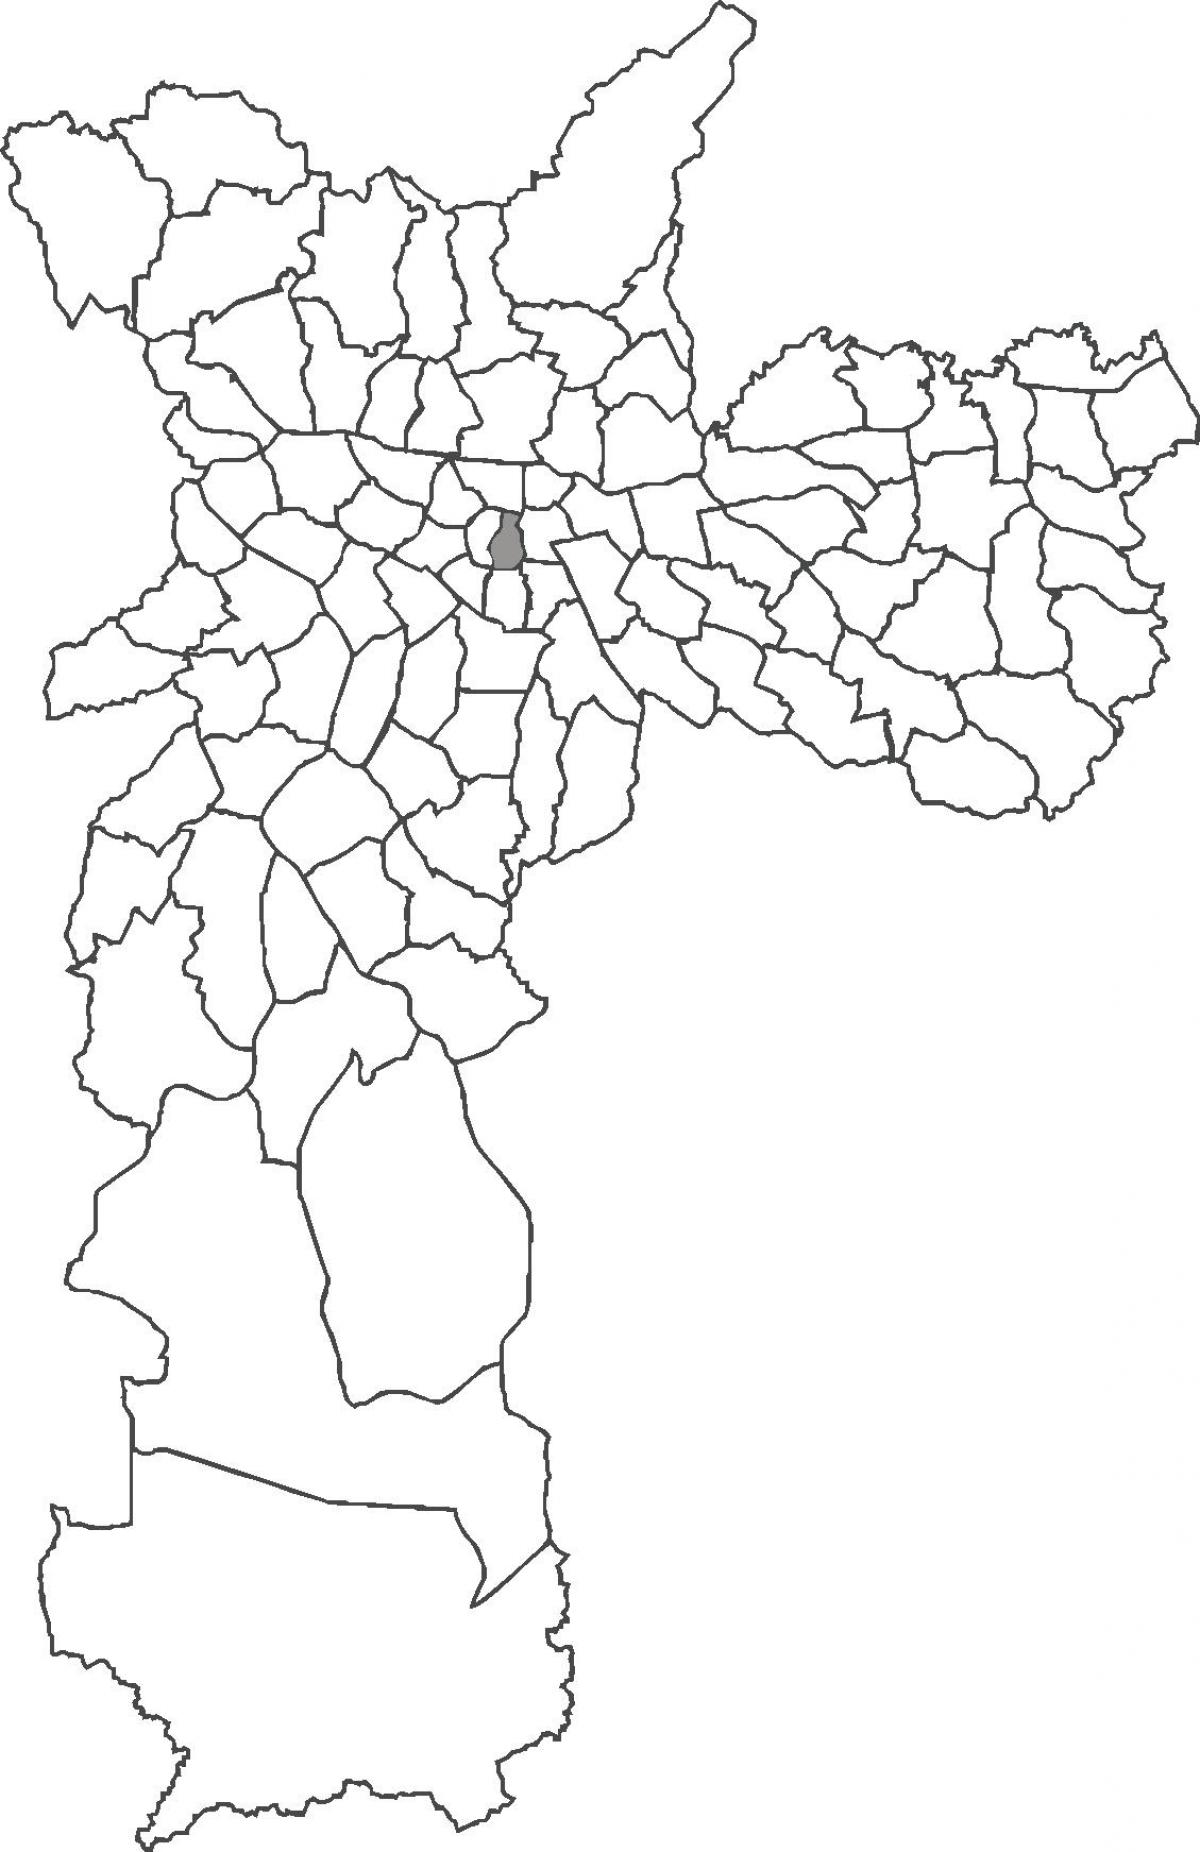 نقشہ کے کیتیڈرل ضلع